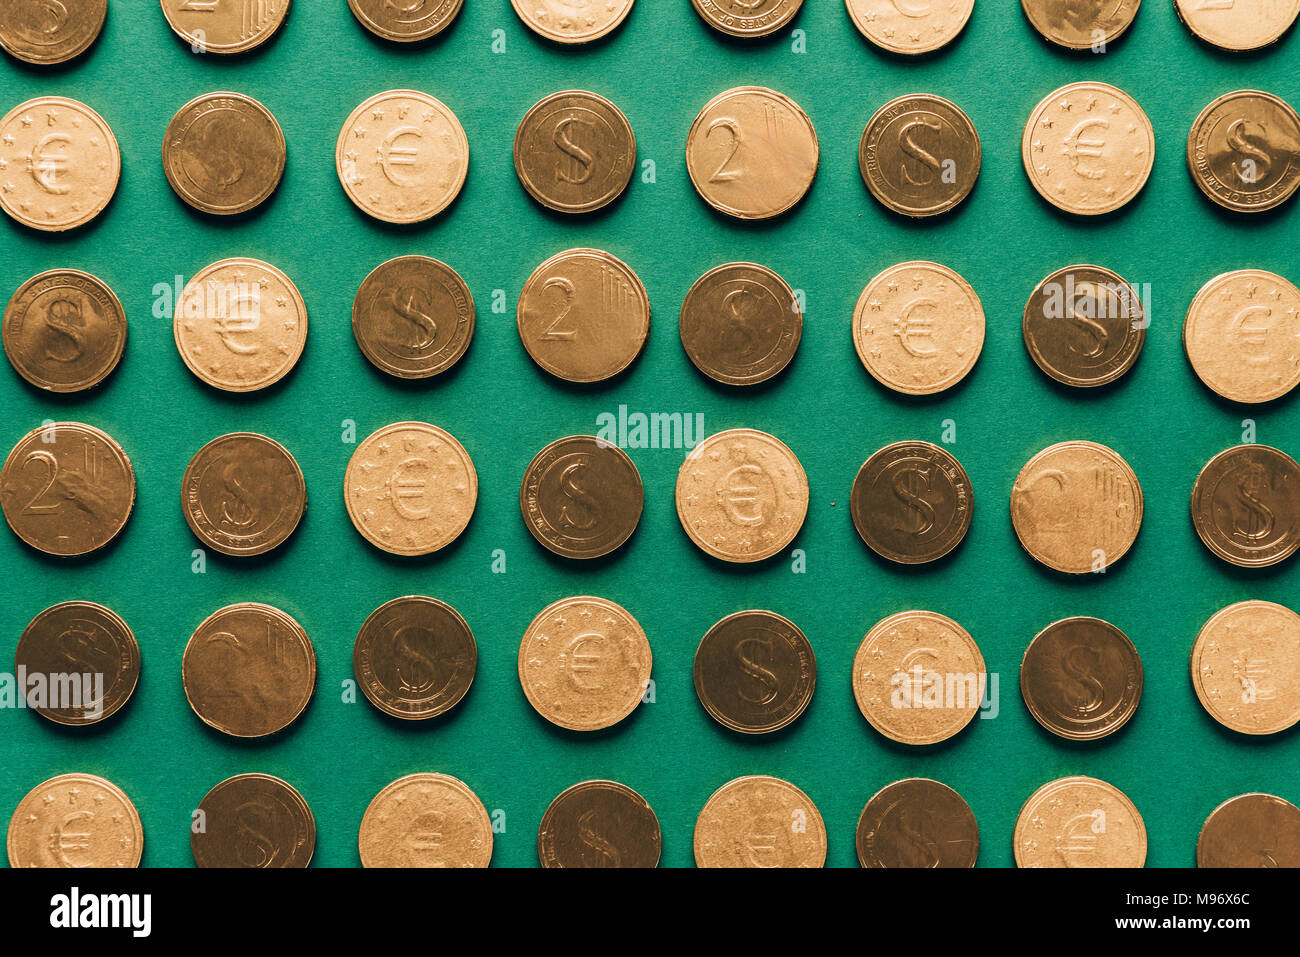 Blick von oben auf die Muster der goldenen Münzen auf Grün, st patricks day Konzept Stockfoto